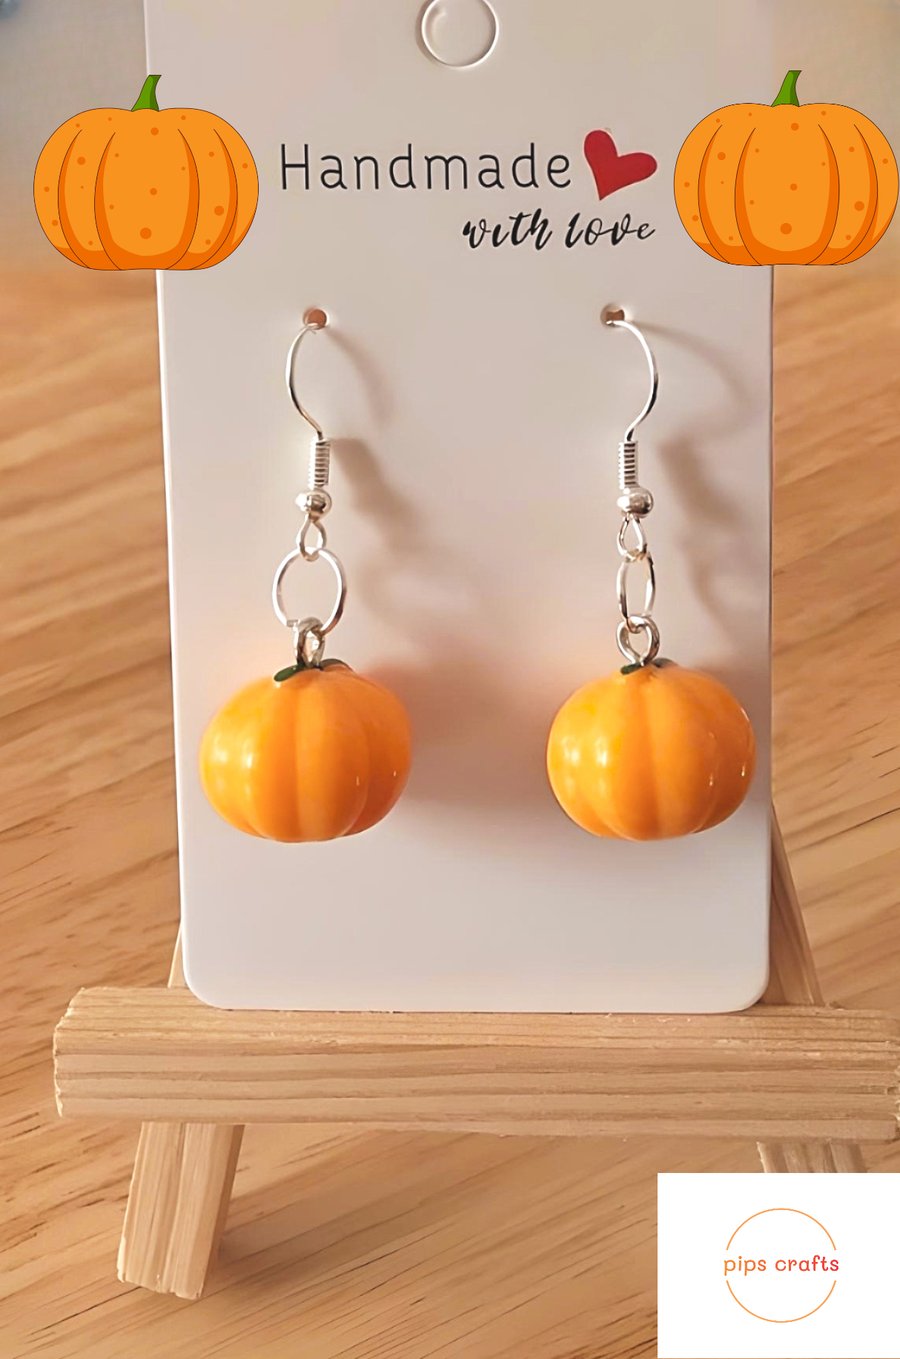 Fun Pumpkin Earrings, Halloween, Fun Spooky Jewellery, Pierced Earrings